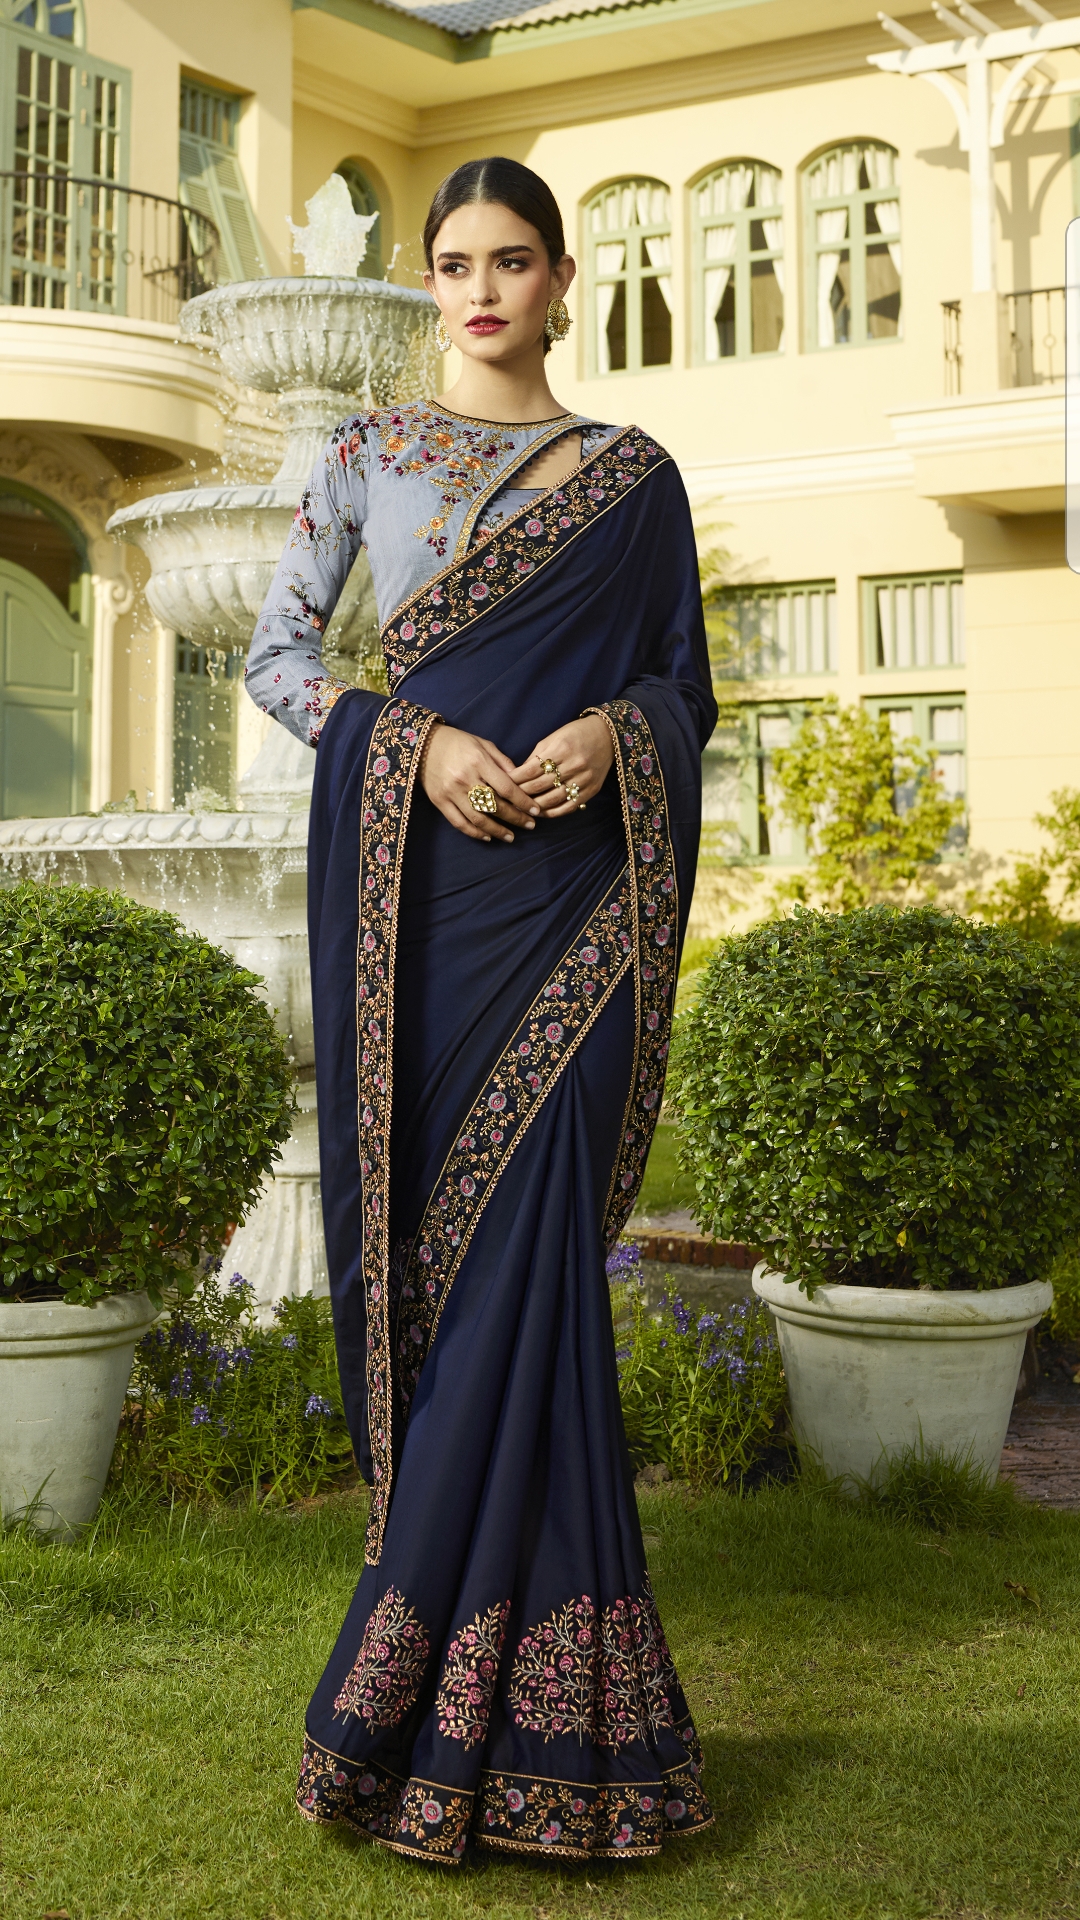 DESIGNER INDIAN SAREE DRESS 9 - Women's clothing Shop